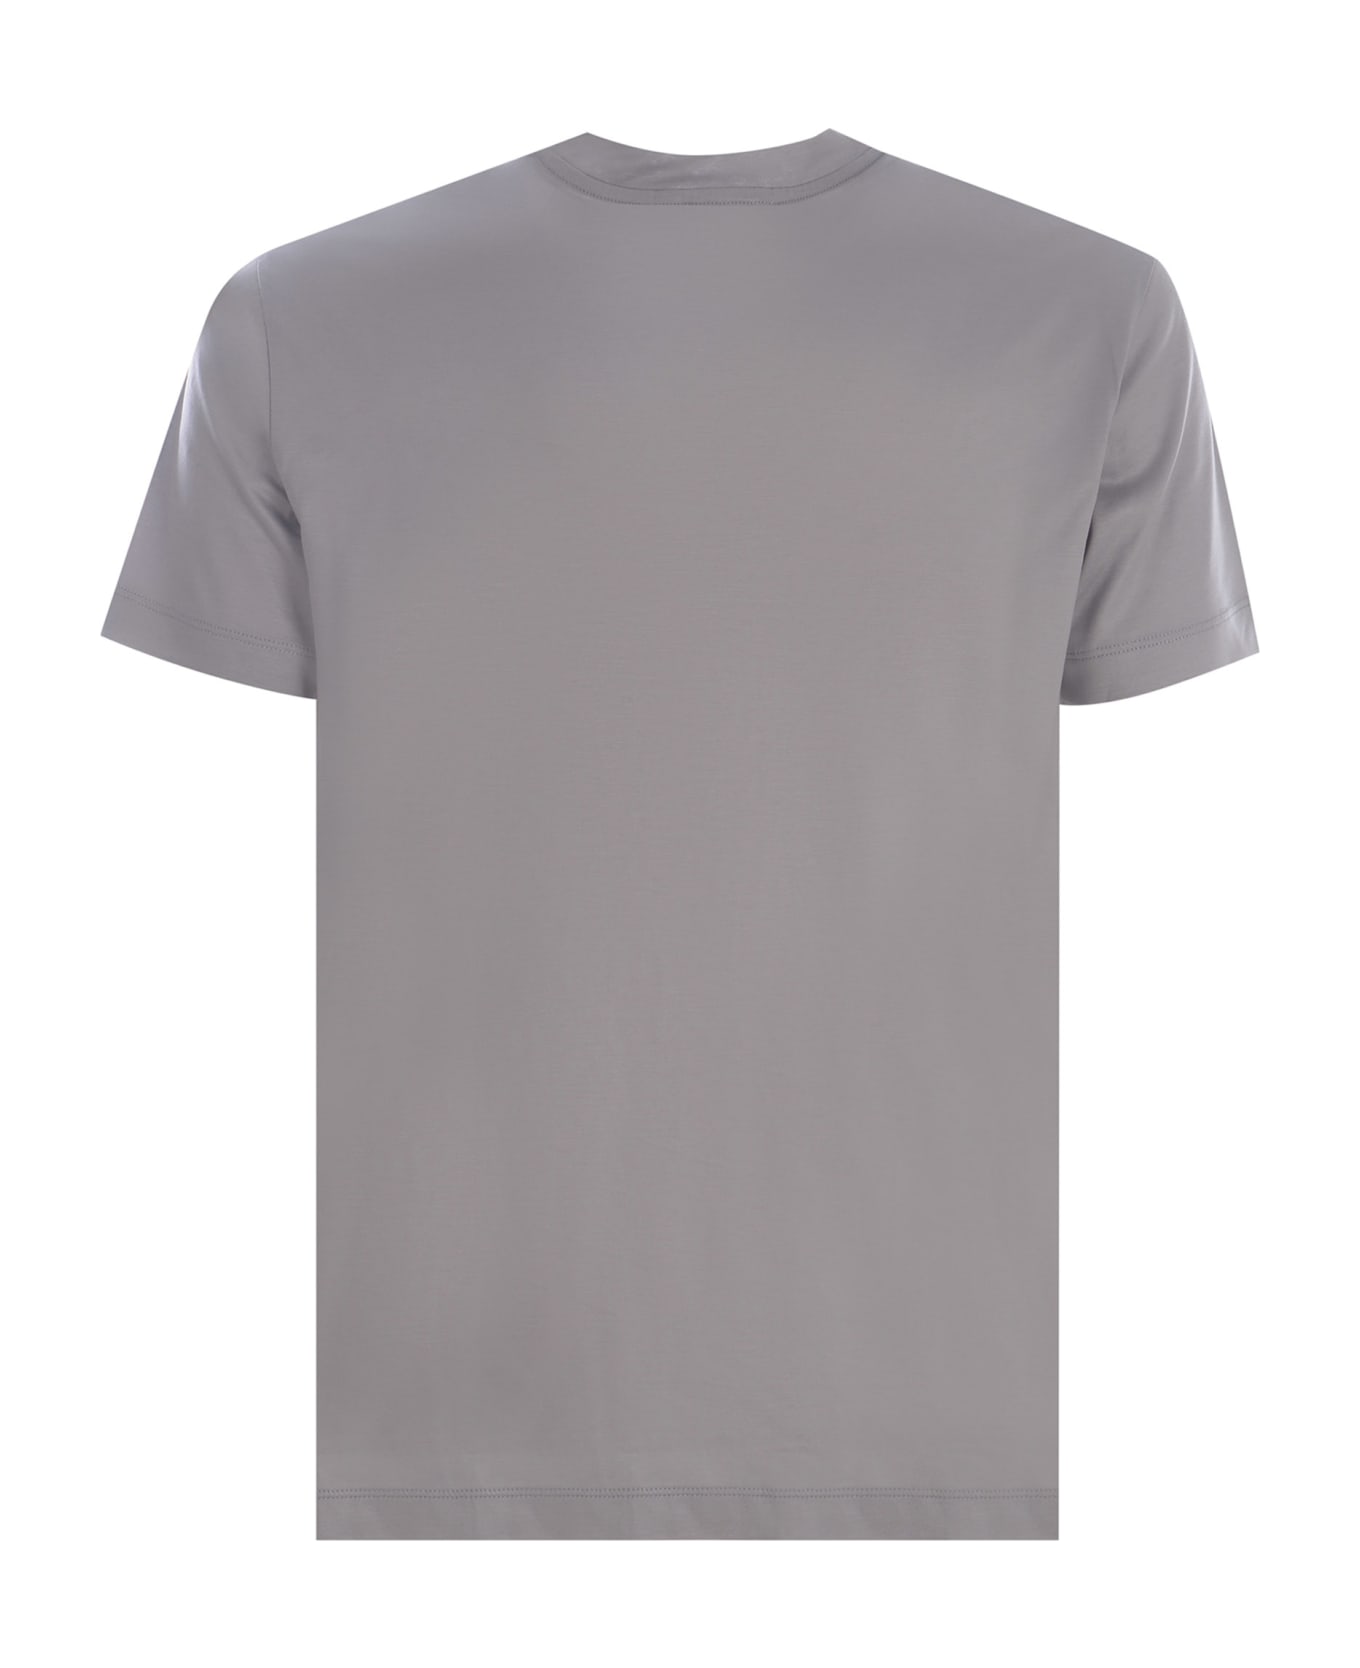 Emporio Armani T-shirt Emporio Armani Made Of Cotton - Grigio chiaro